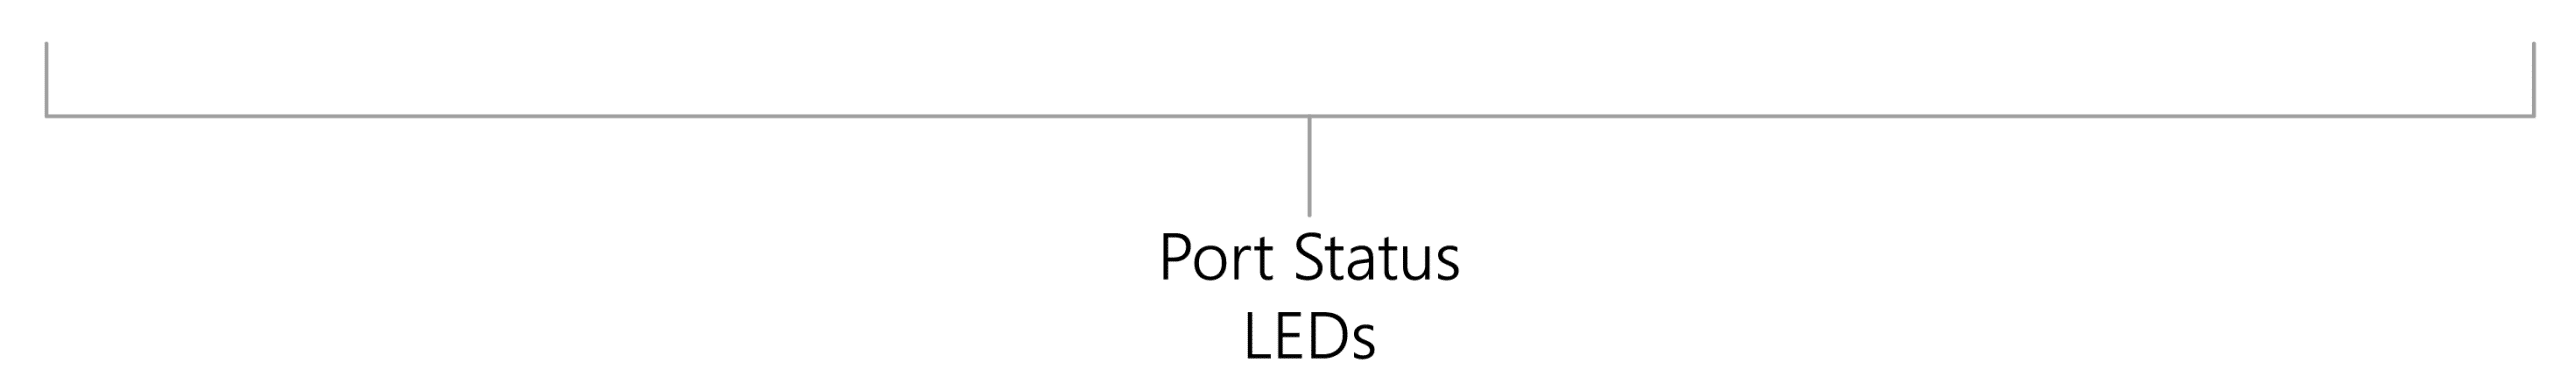 PSGS-2626KF_PortStatusLEDs